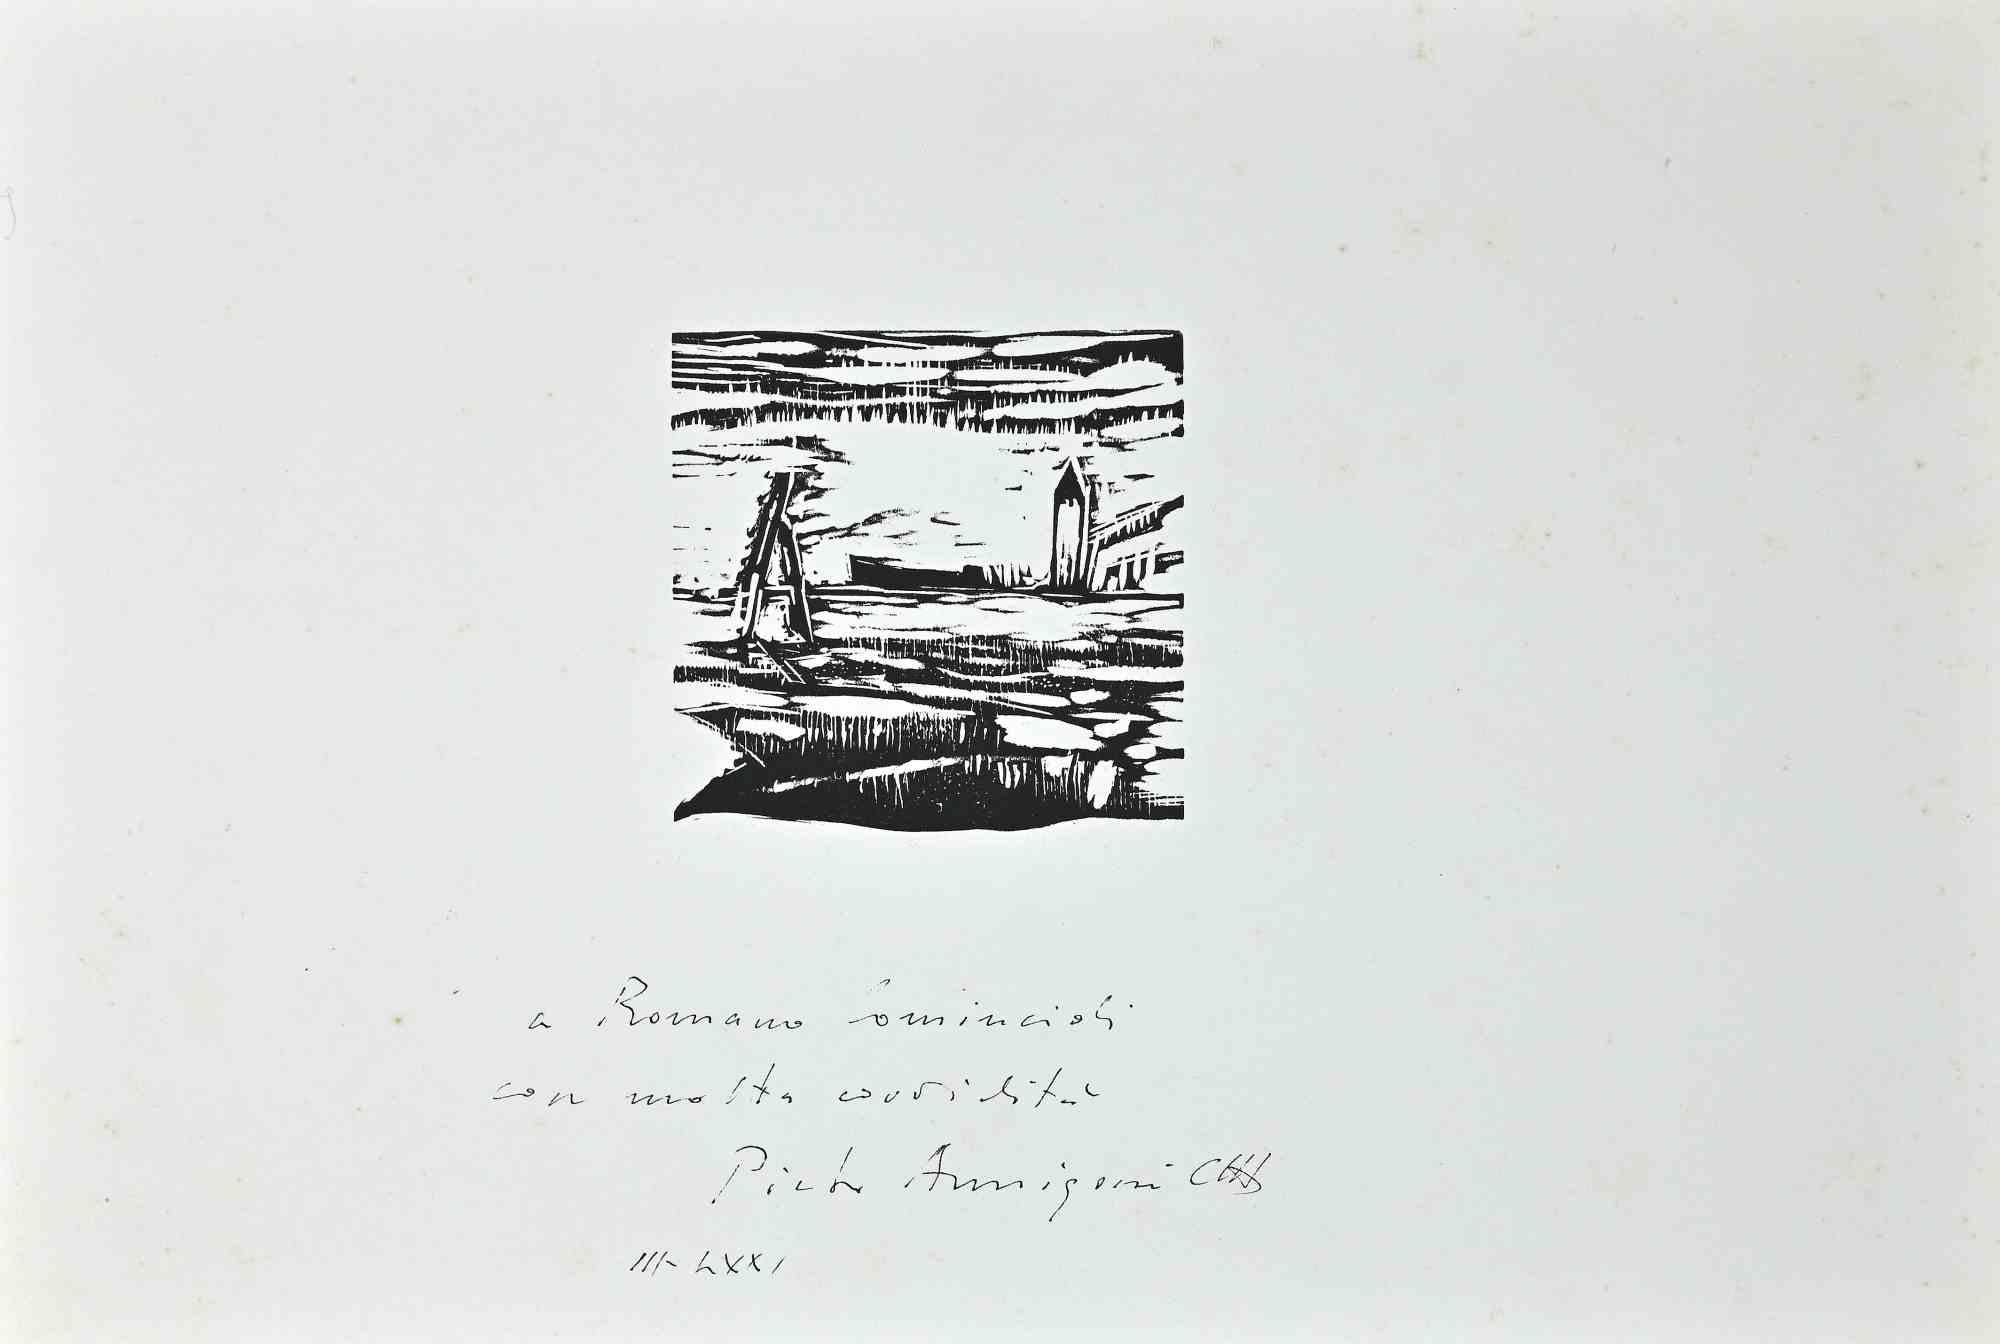 Landscape est une œuvre d'art contemporain originale réalisée en 1971 par Pietro Annigoni (Milan, 7 juin 1910 - Florence, 28 octobre 1988). 

Gravure sur bois originale en noir et blanc sur papier.

Signé à la main par l'artiste au crayon avec une